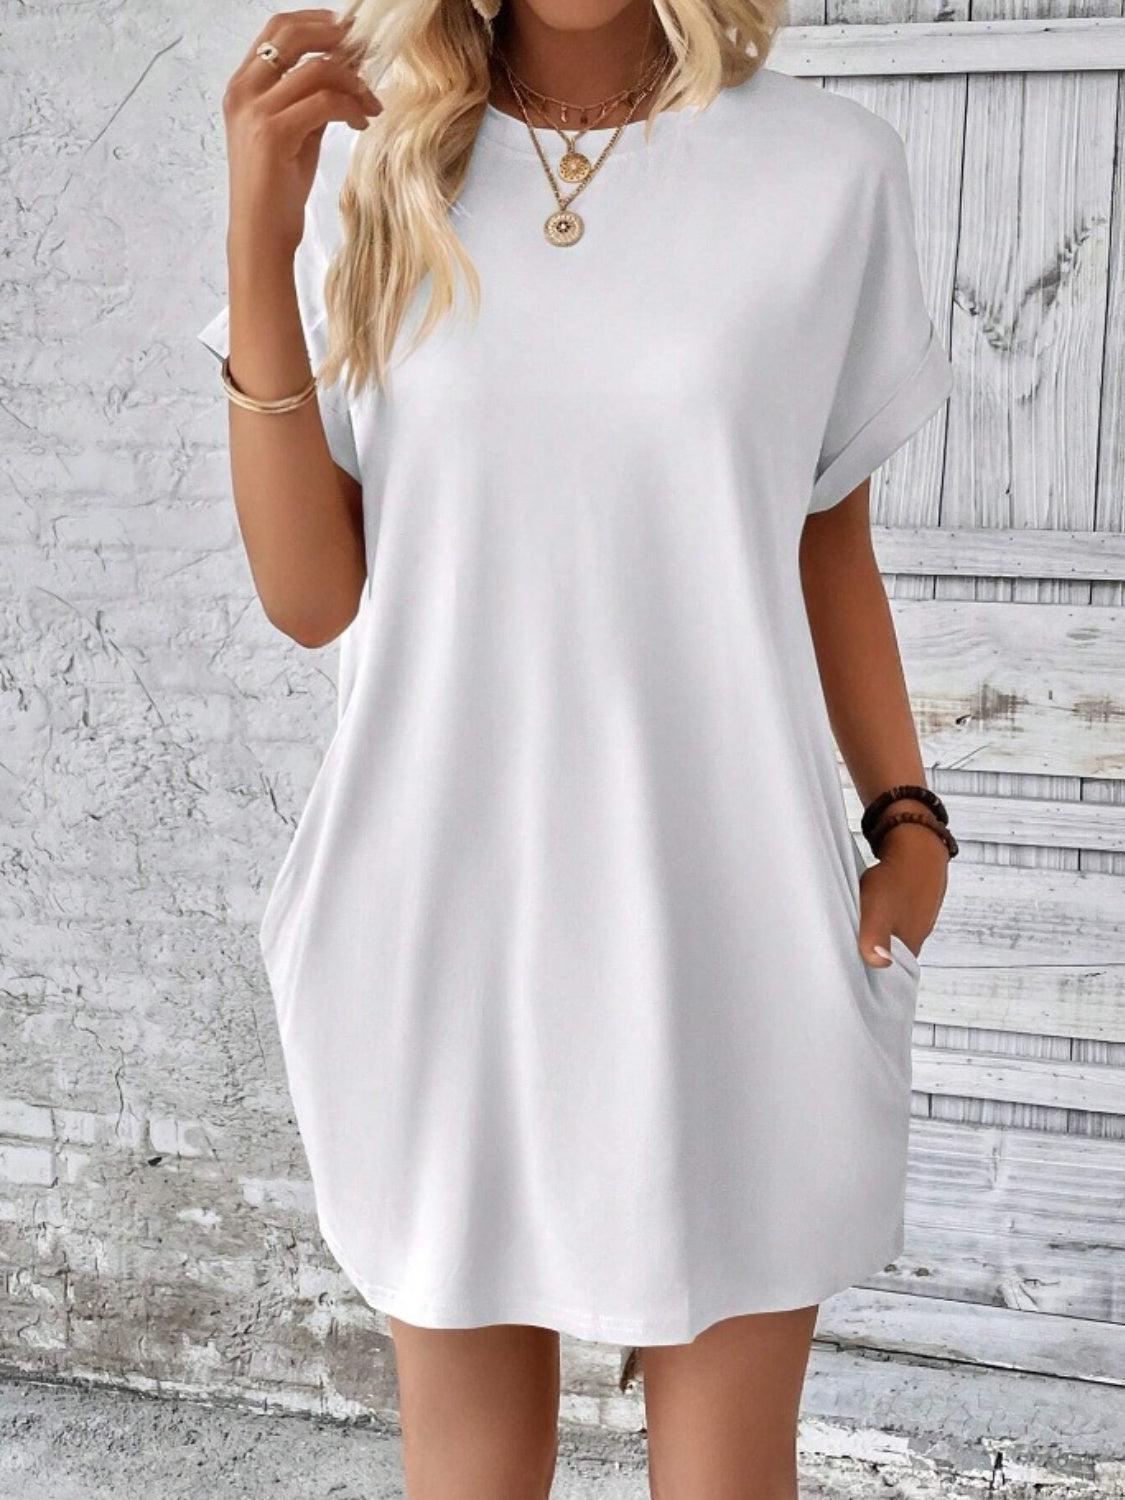 a woman wearing a white shirt dress